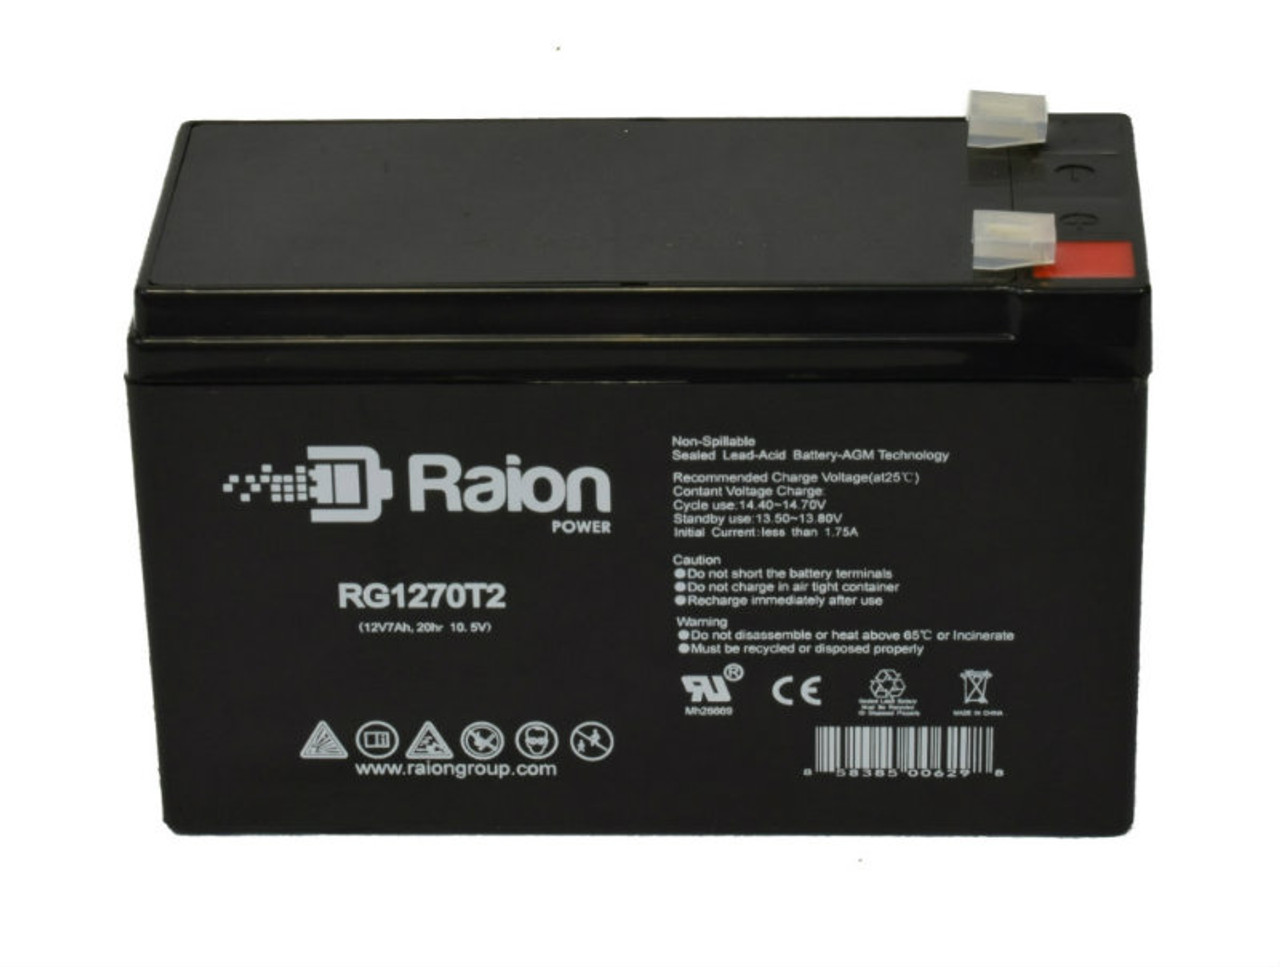 Raion Power RG1270T1 12V 7Ah Lead Acid Battery for Arrow International 7350 Cardiac Output Monitor